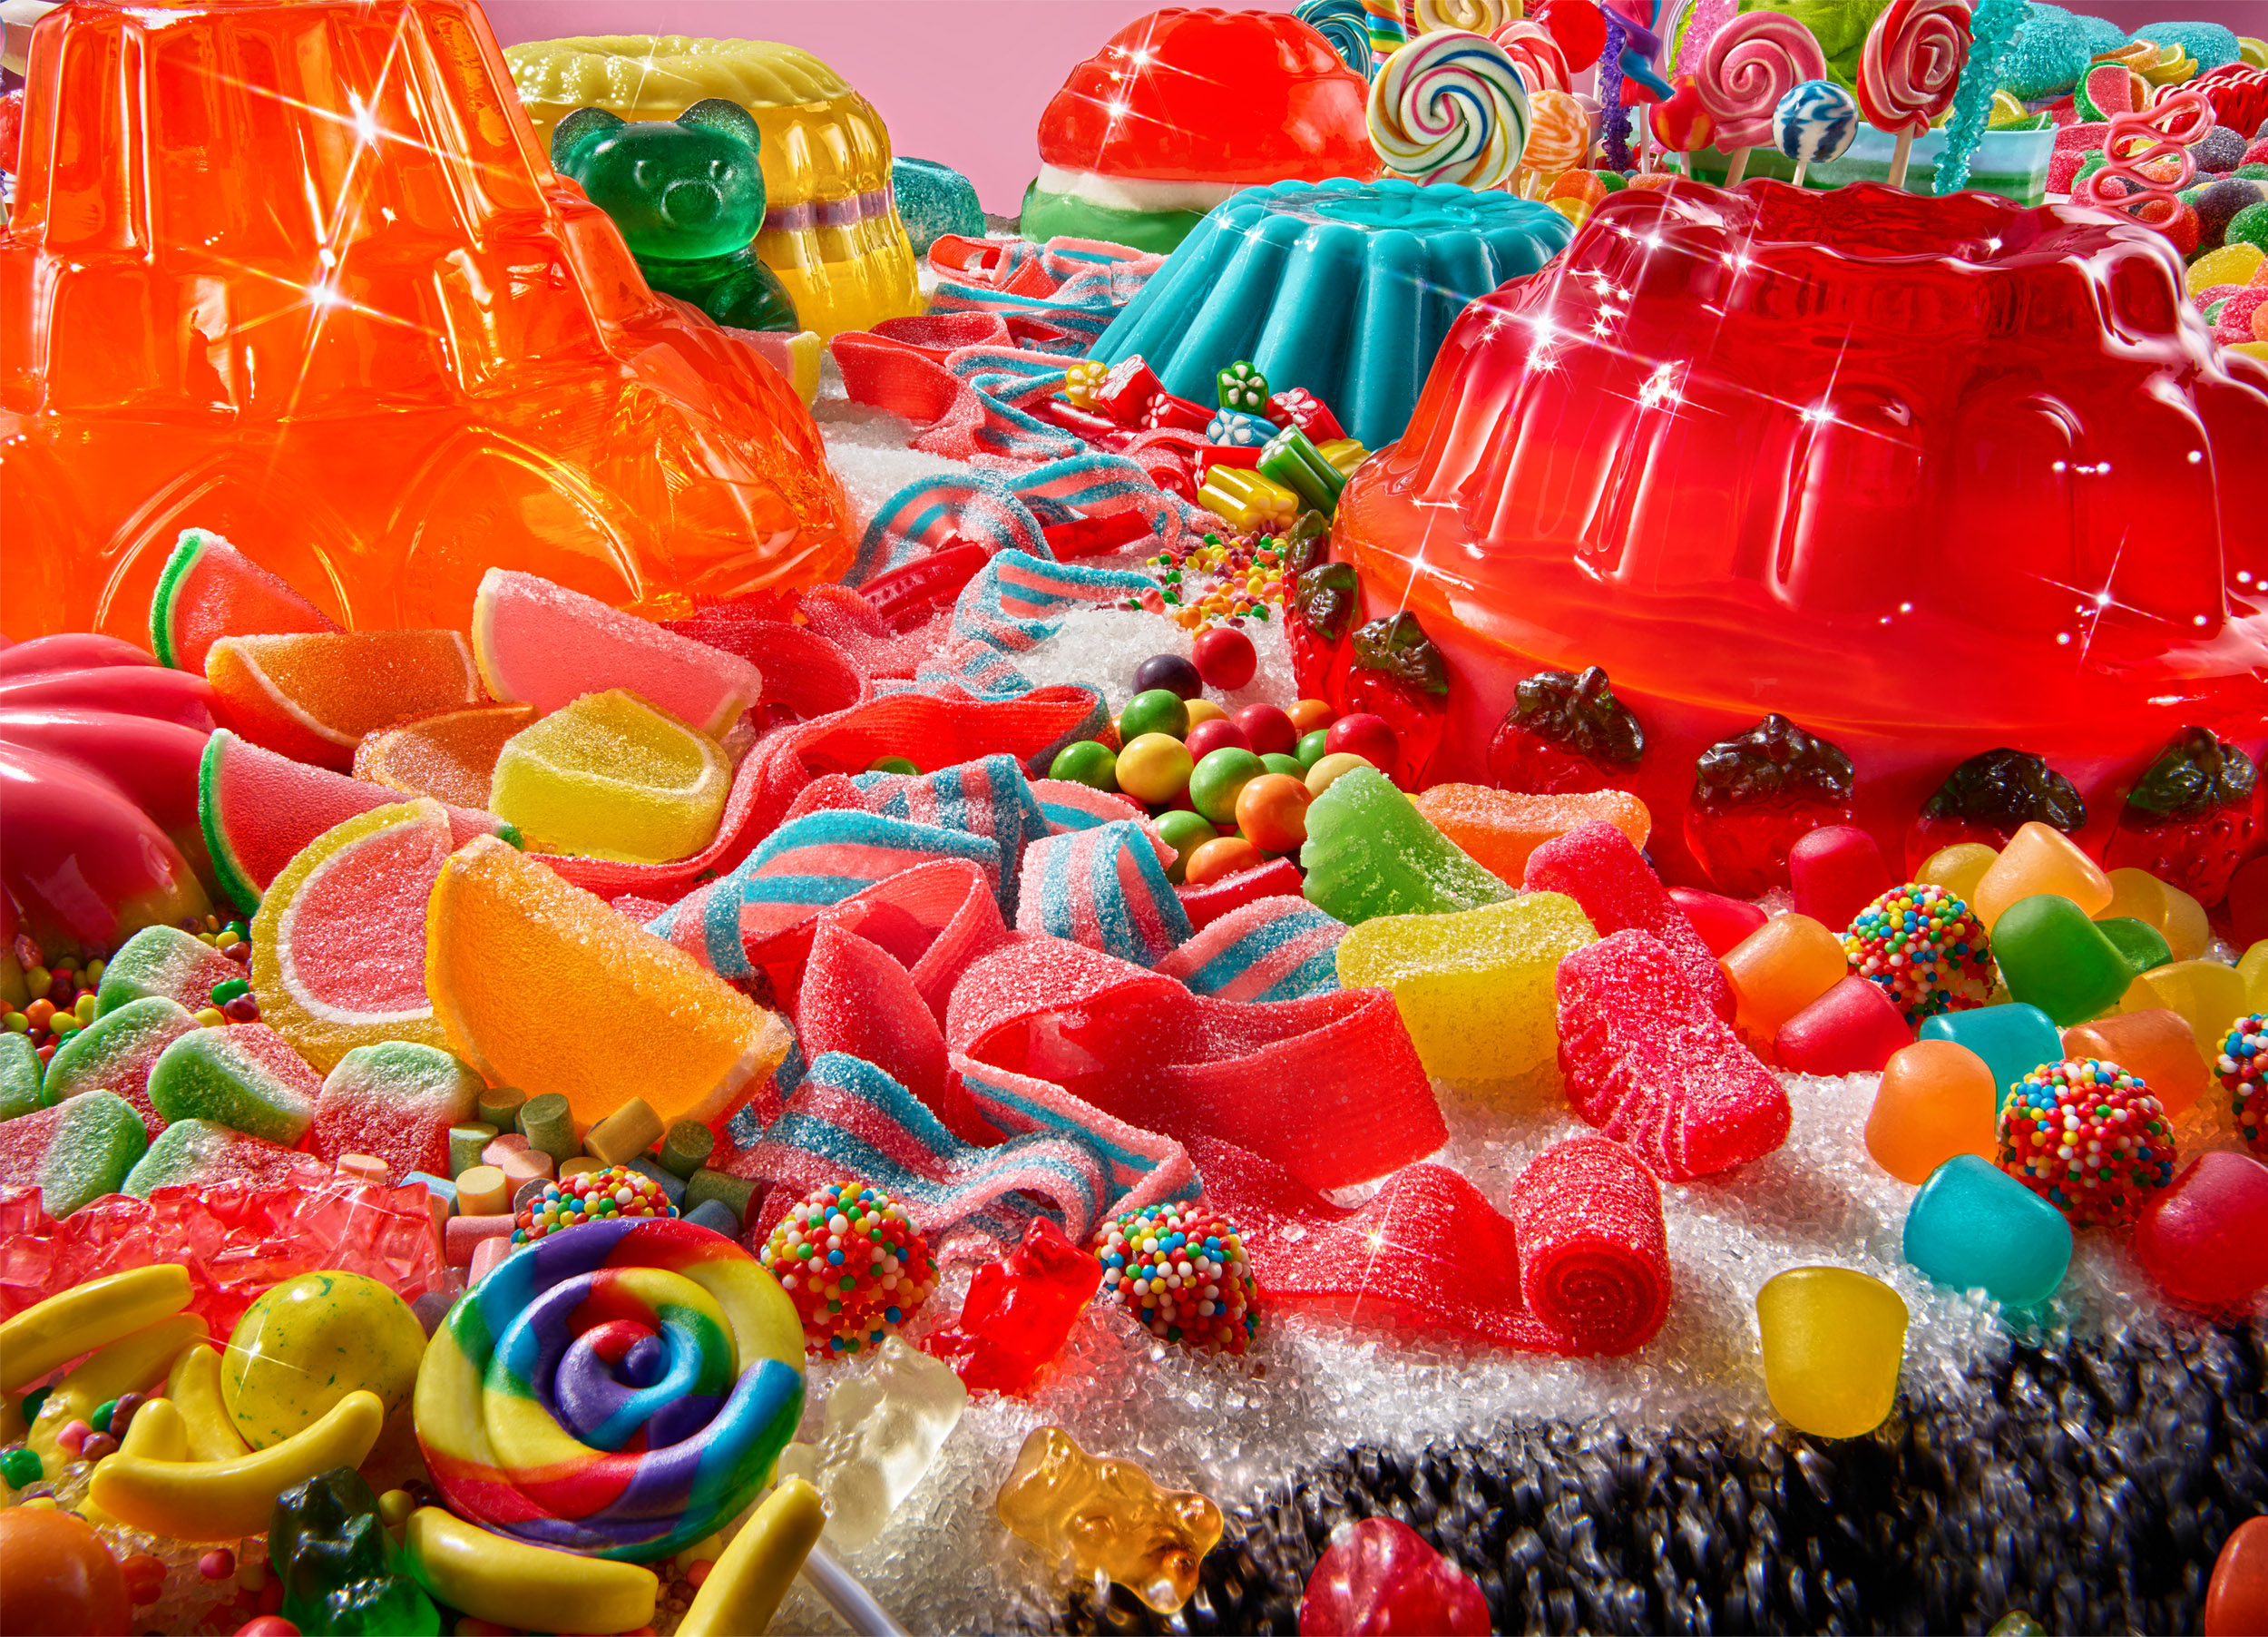 RGB-EatingWell-Sugar-CandyScape